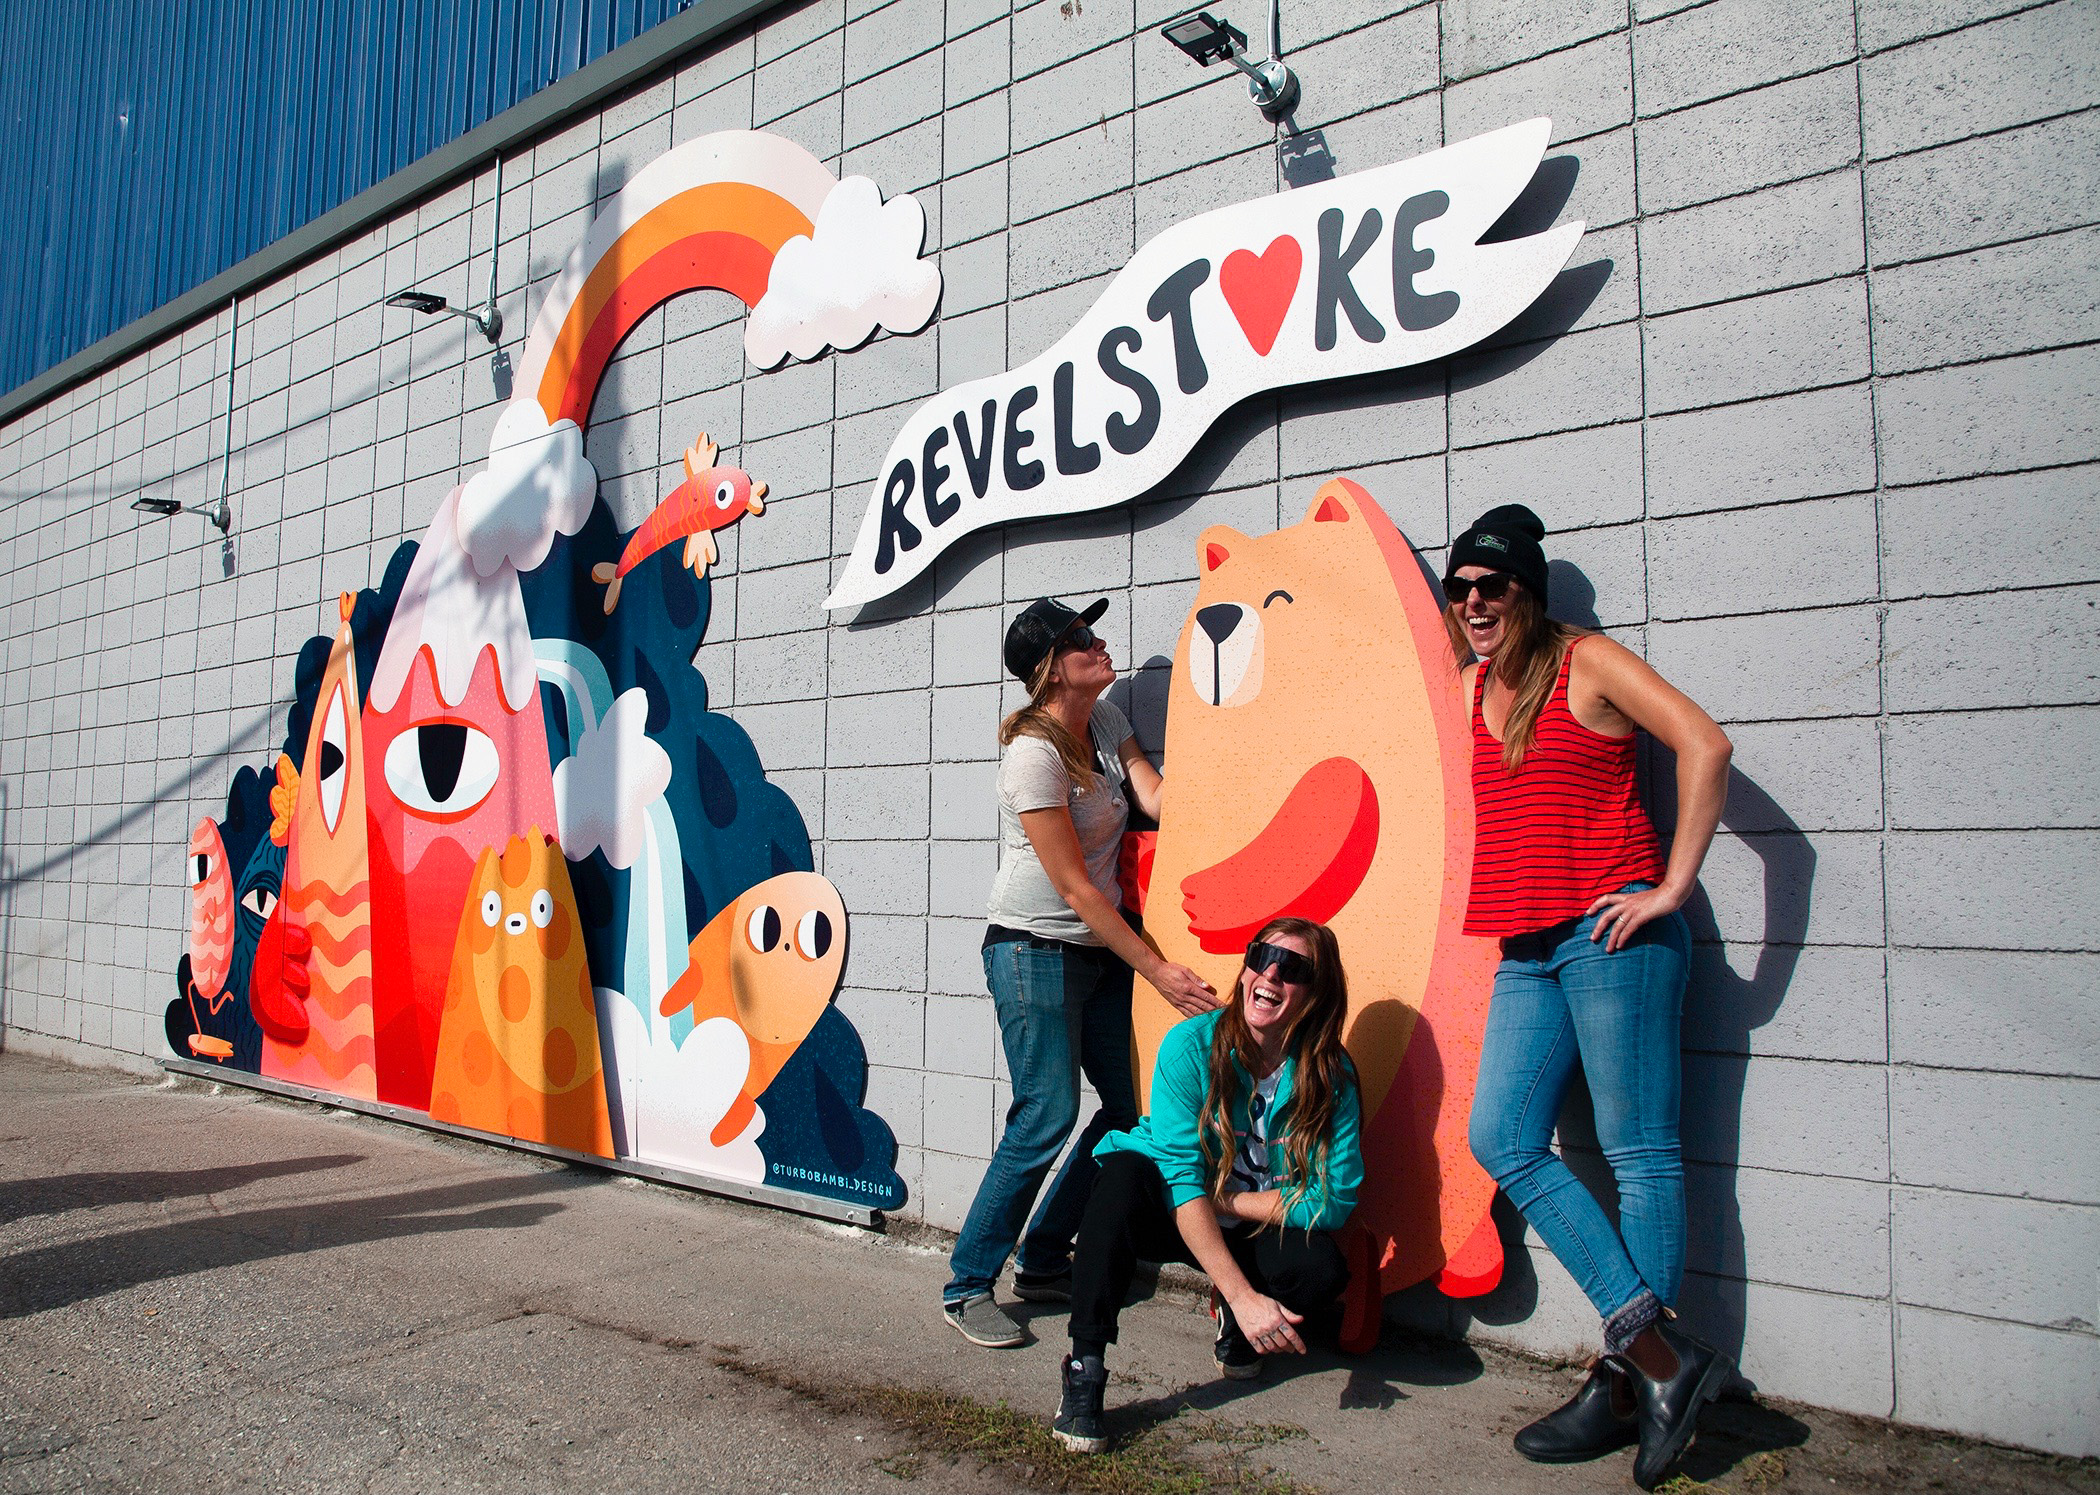 “I hugged a Bear in Revelstoke”
Art Installation / Mural By Turbo Bambi Downtown Revelstoke